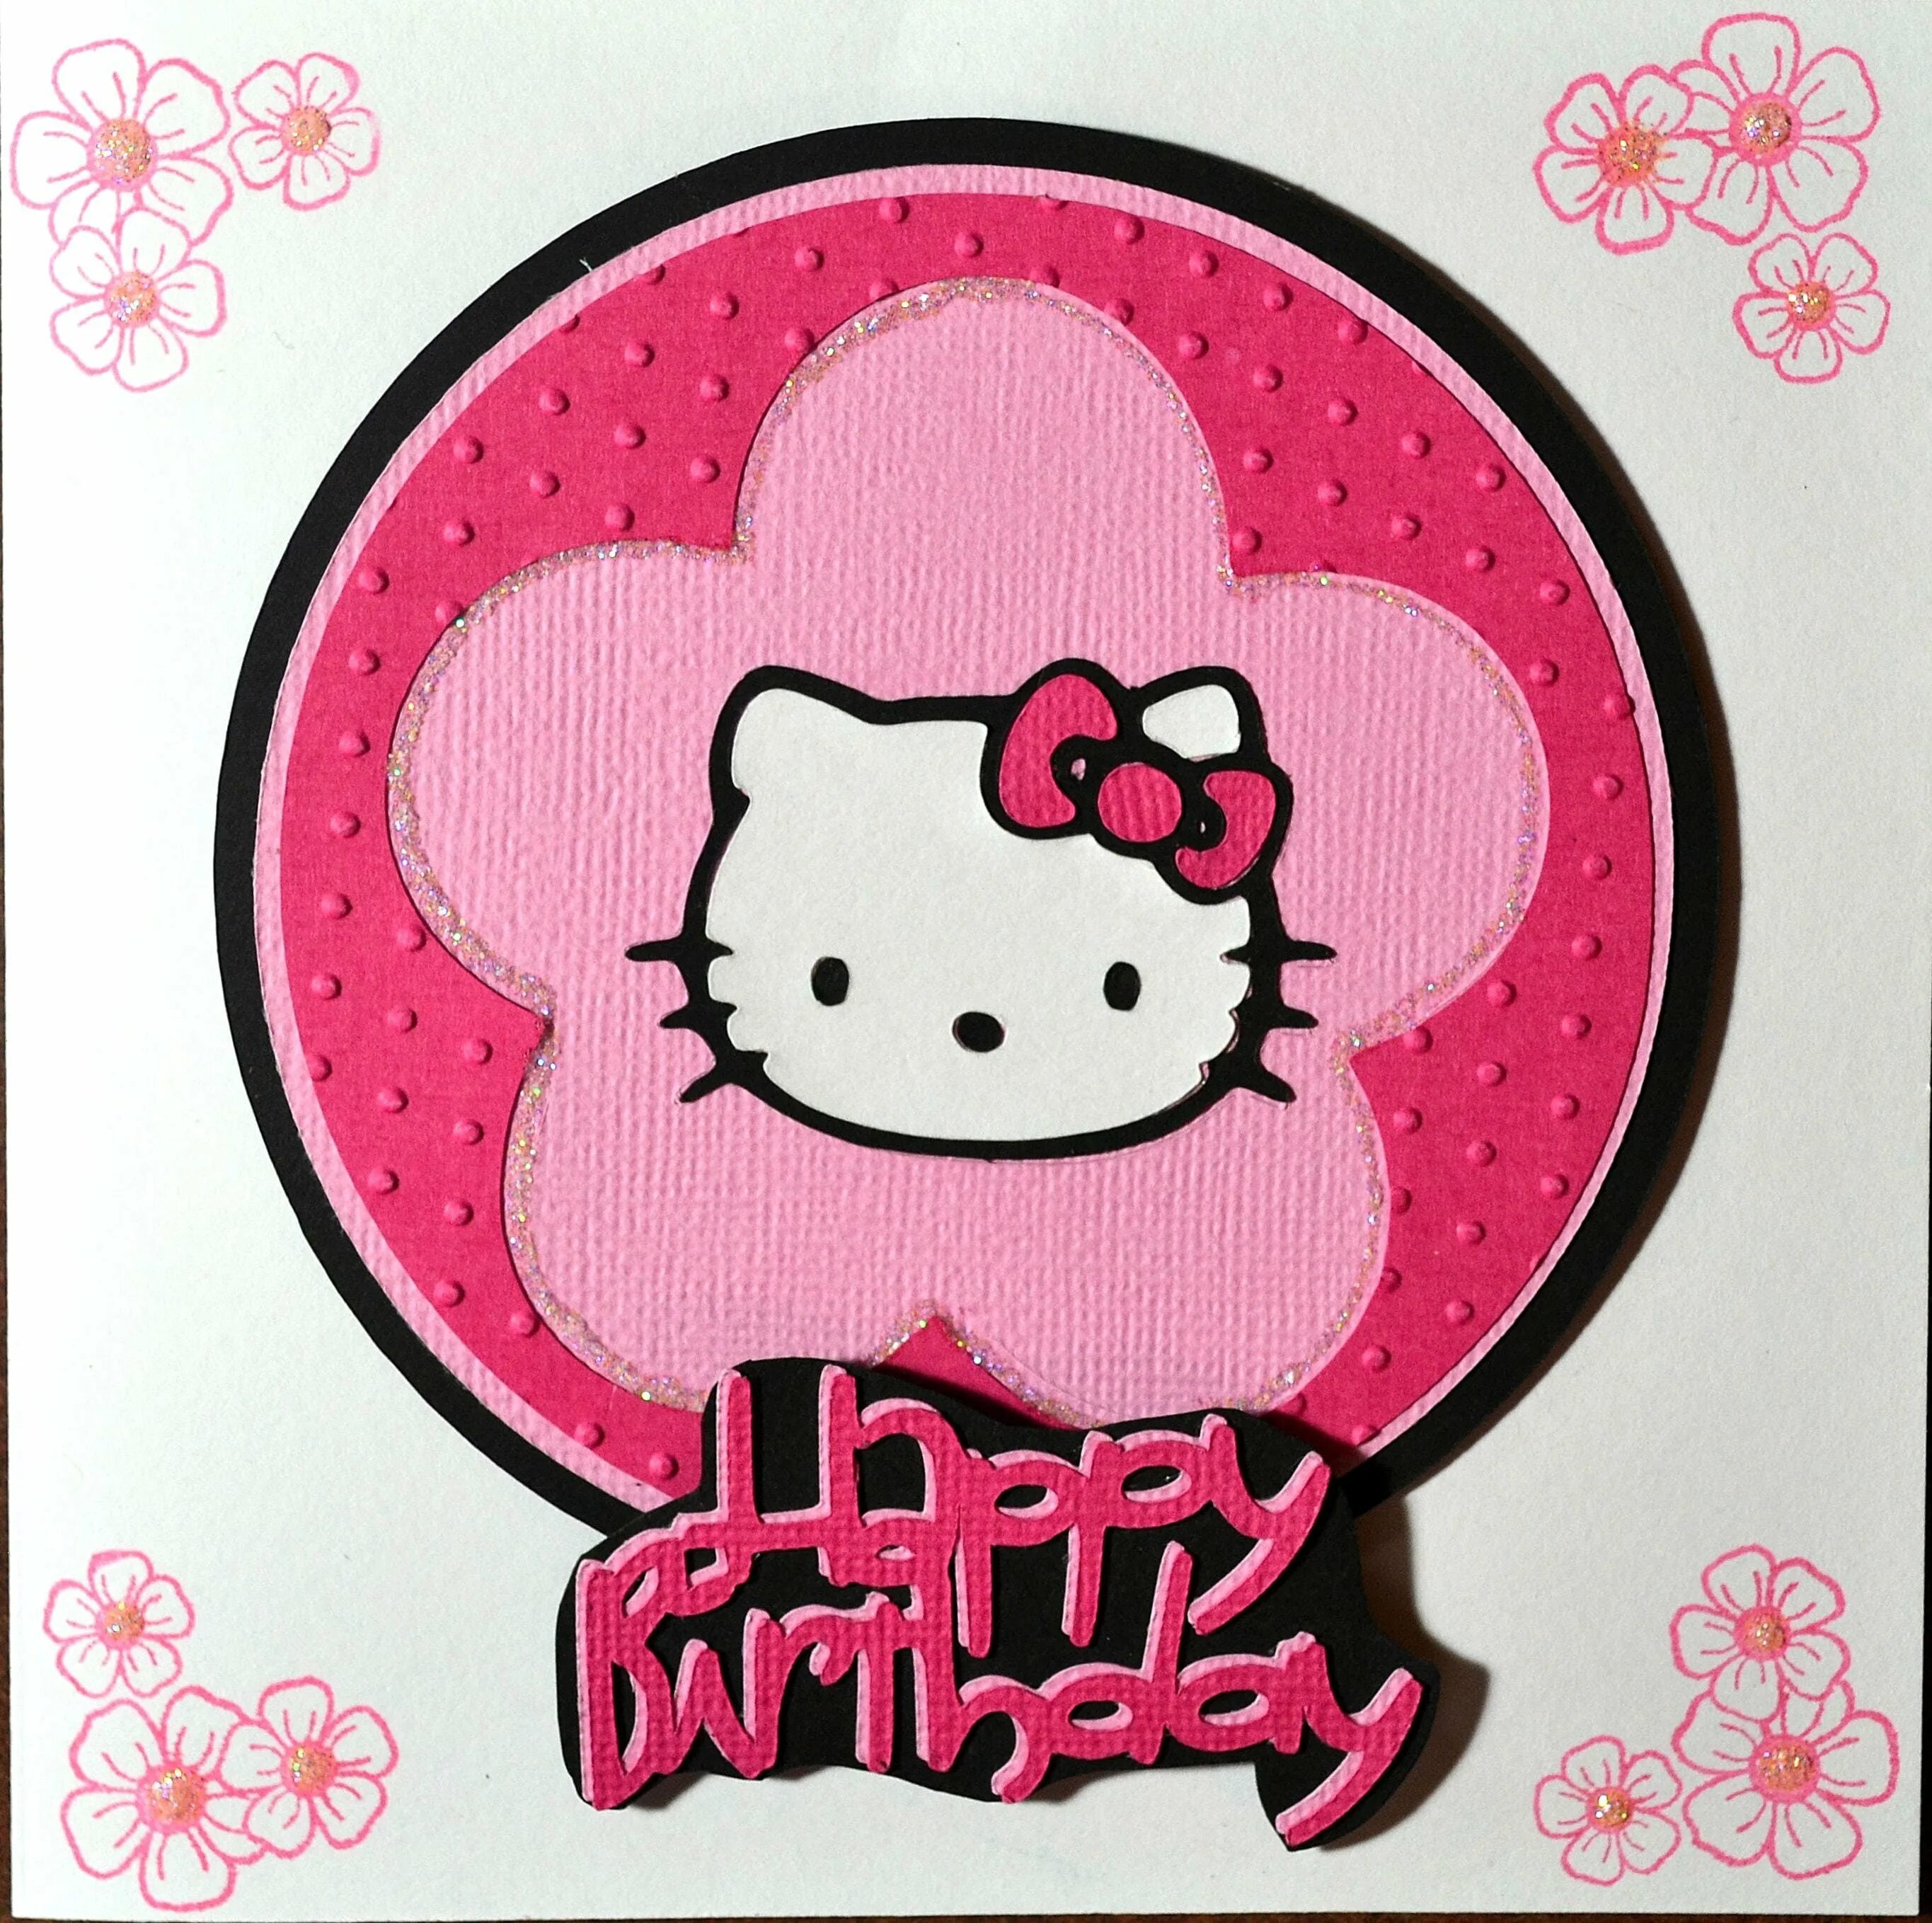 Открытка в стиле Хеллоу Китти. Поздравительная открытка с Хеллоу Китти. Hello Kitty открытка с днем рождения. Мини постеры Хелло Китти.